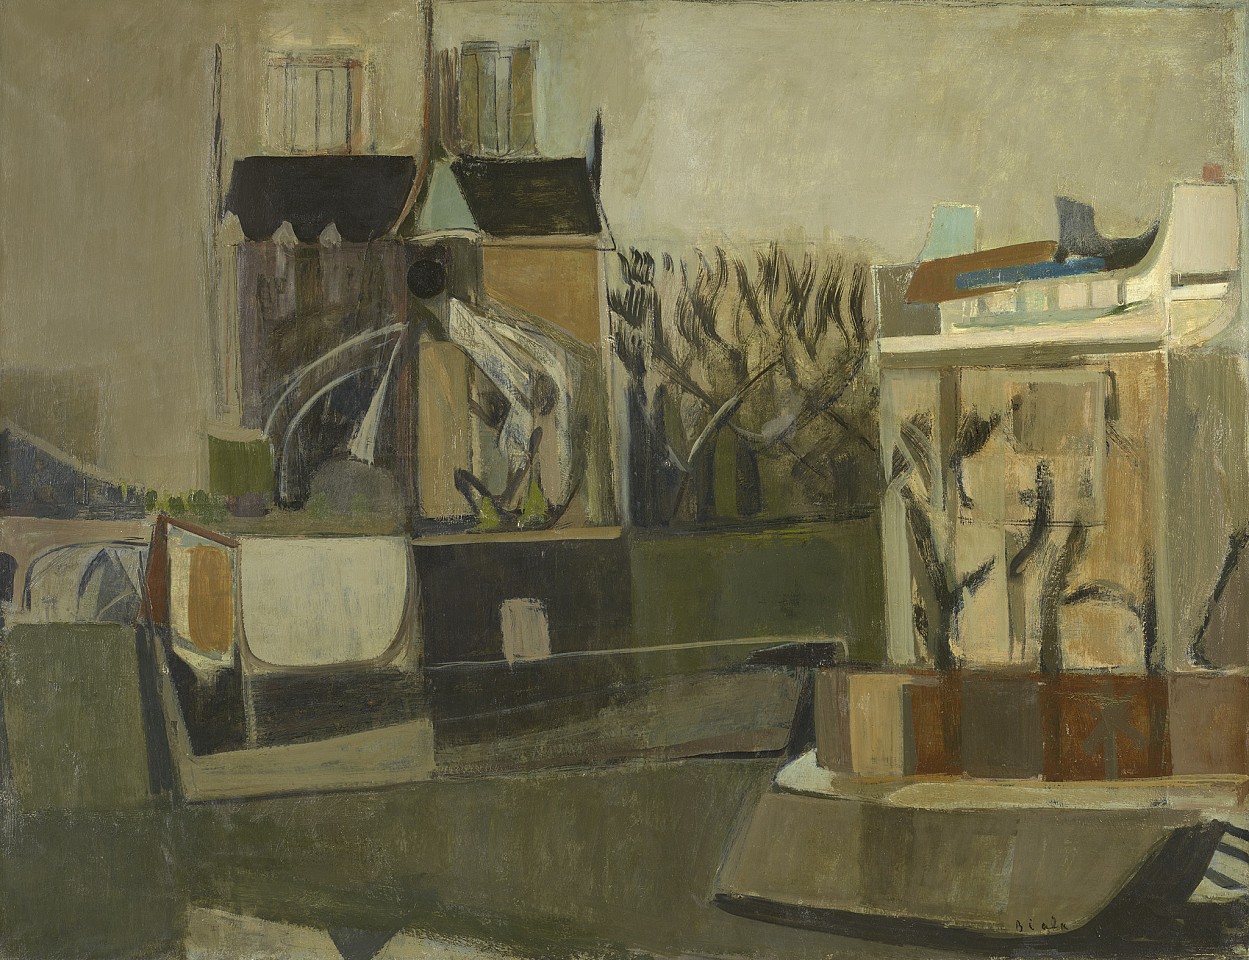 Janice Biala, Chevet de Notre Dame et e Ile St. Louis, 1949, 1949
Oil on canvas, 35 x 45 1/2 in. (88.9 x 115.6 cm)
BIAL-00050